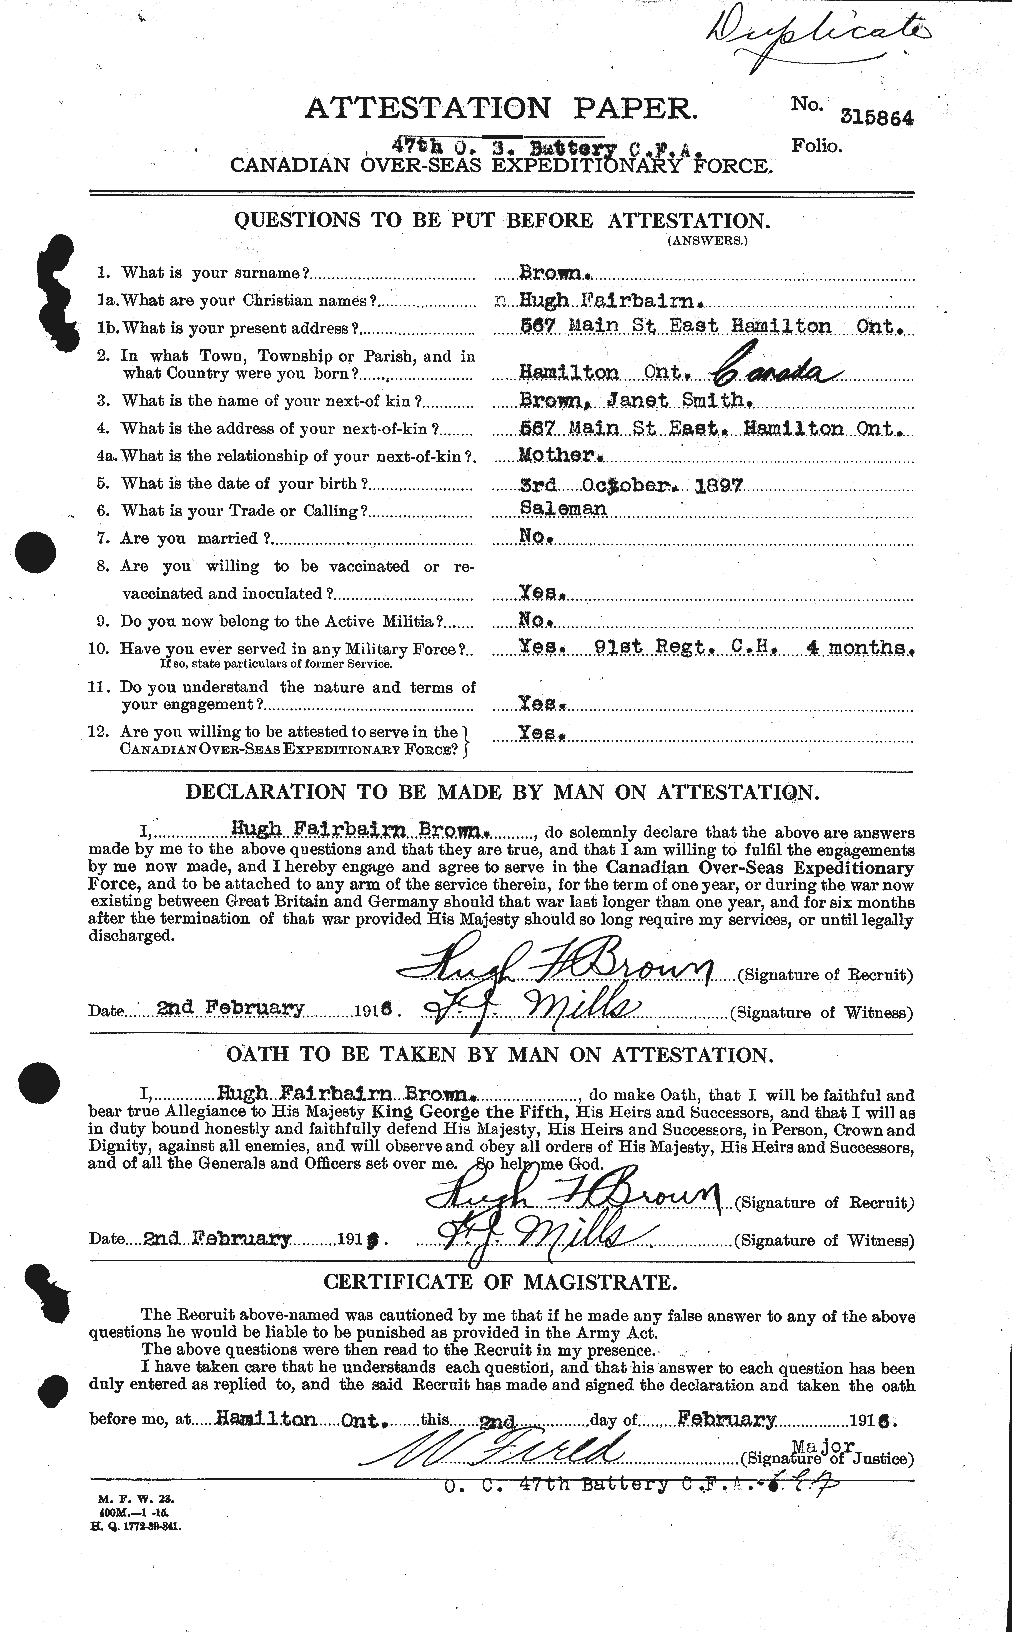 Dossiers du Personnel de la Première Guerre mondiale - CEC 265647a